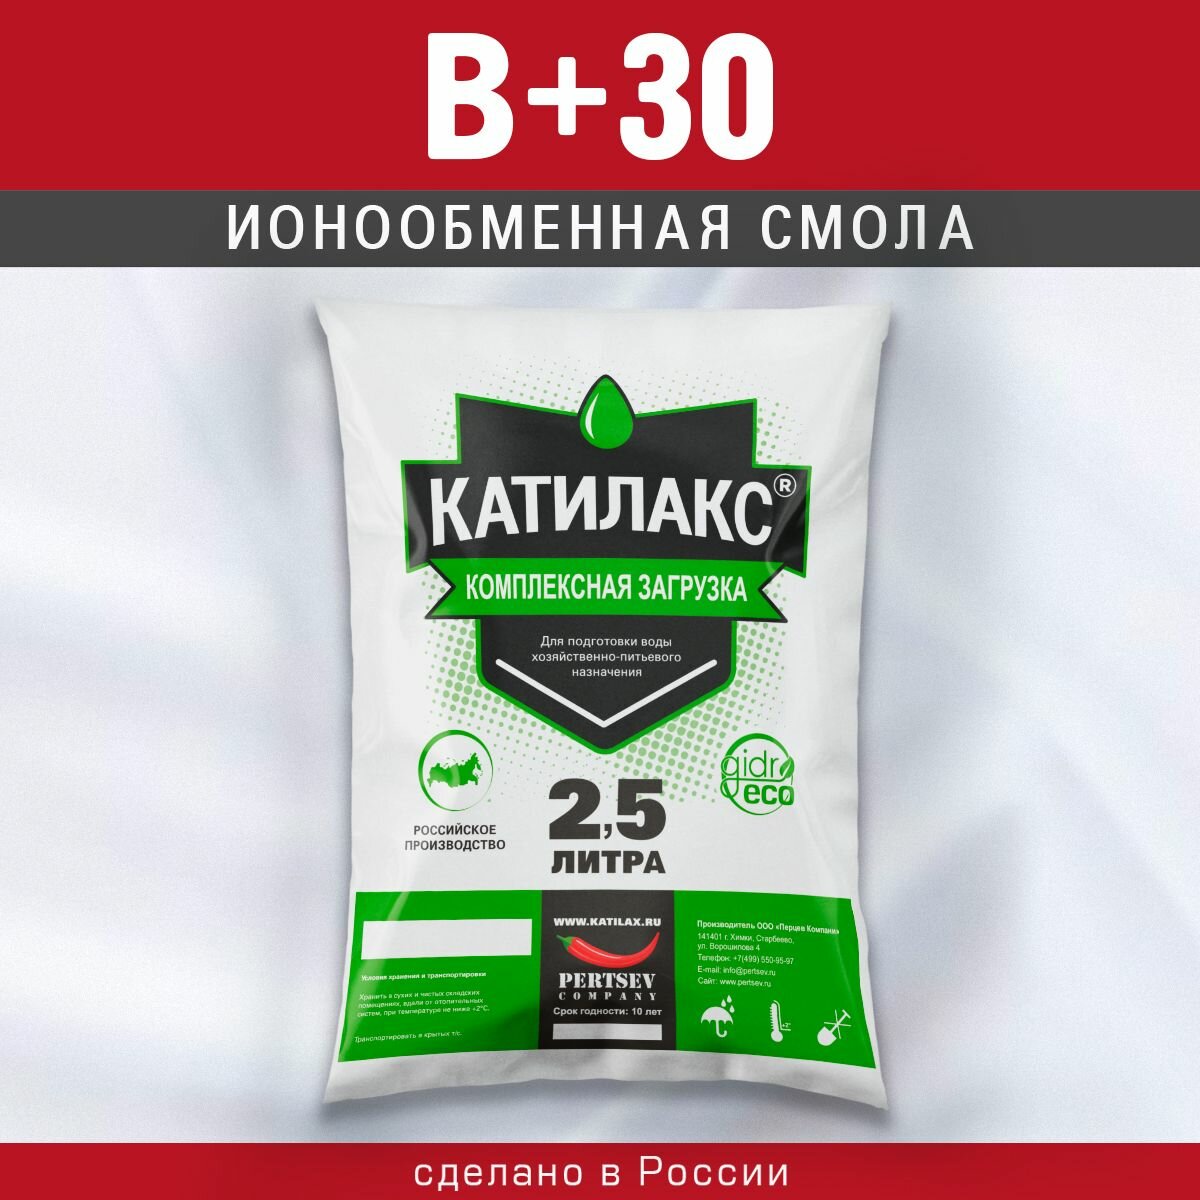 Ионообменная смола Катилакс - В (+30) (Мешок 2,5 литра)